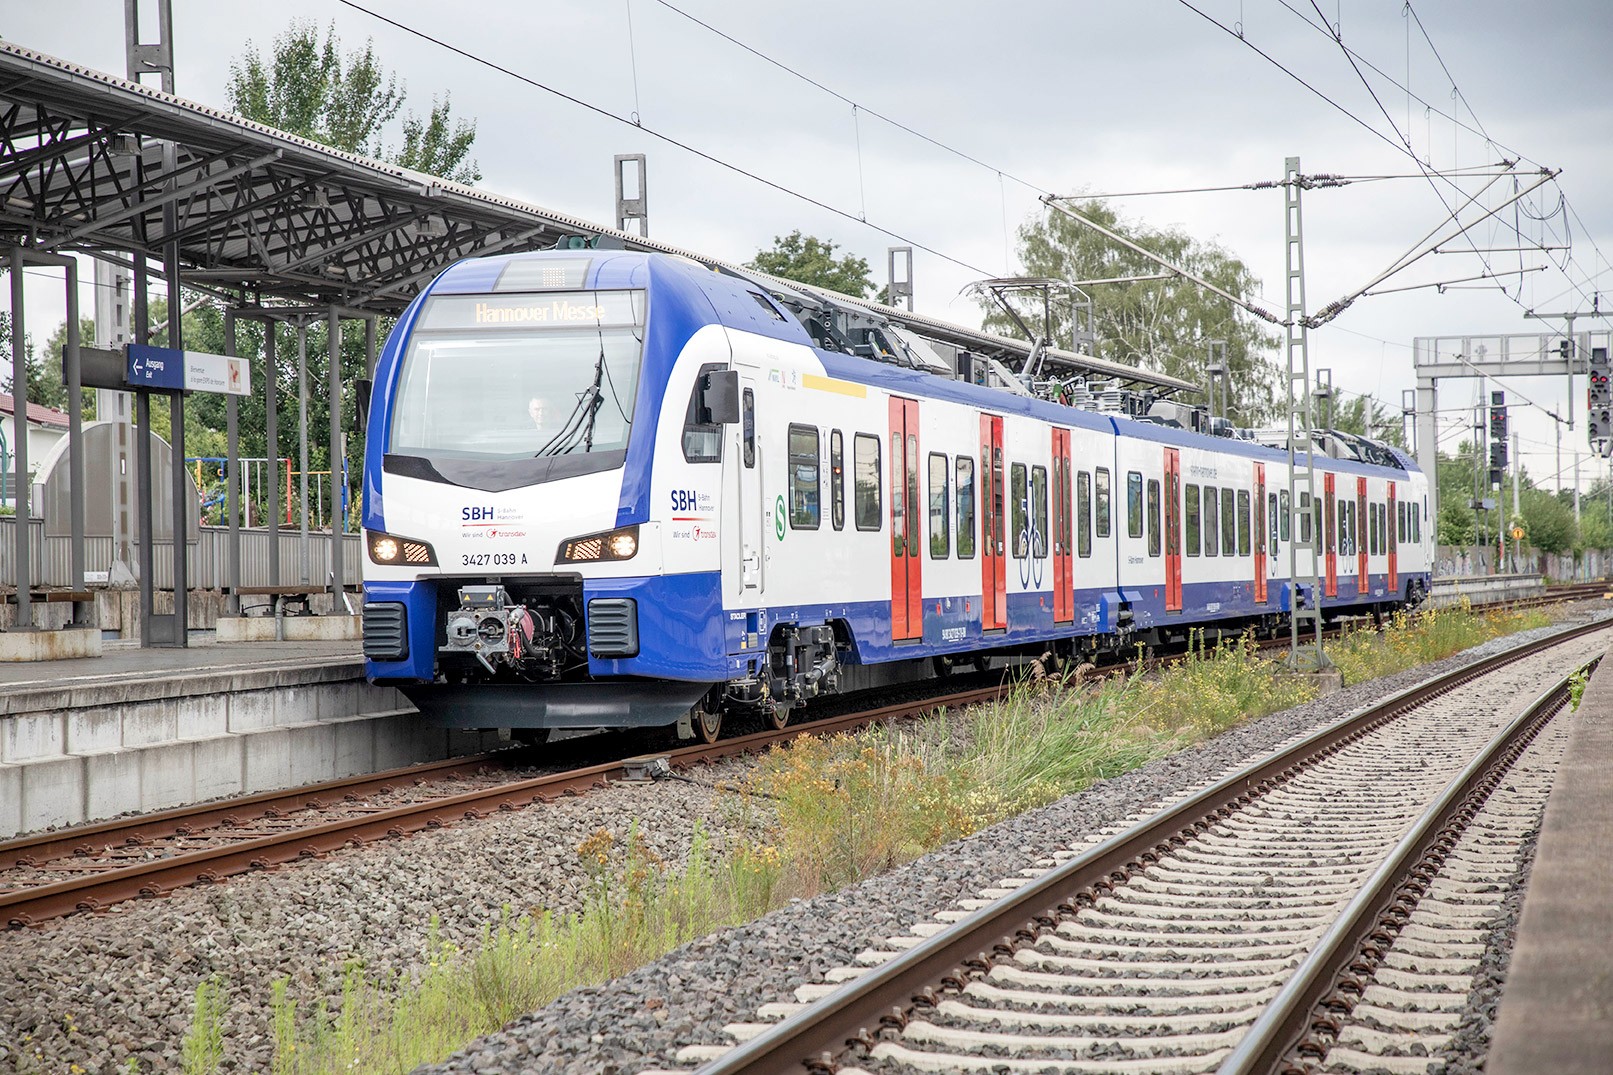 Am 12. Dezember fällt bei der Transdev Hannover GmbH der Startschuss – in der Nacht zum Sonntag übernimmt das Unternehmen drei Linien des S-Bahn-Netz Hannovers.